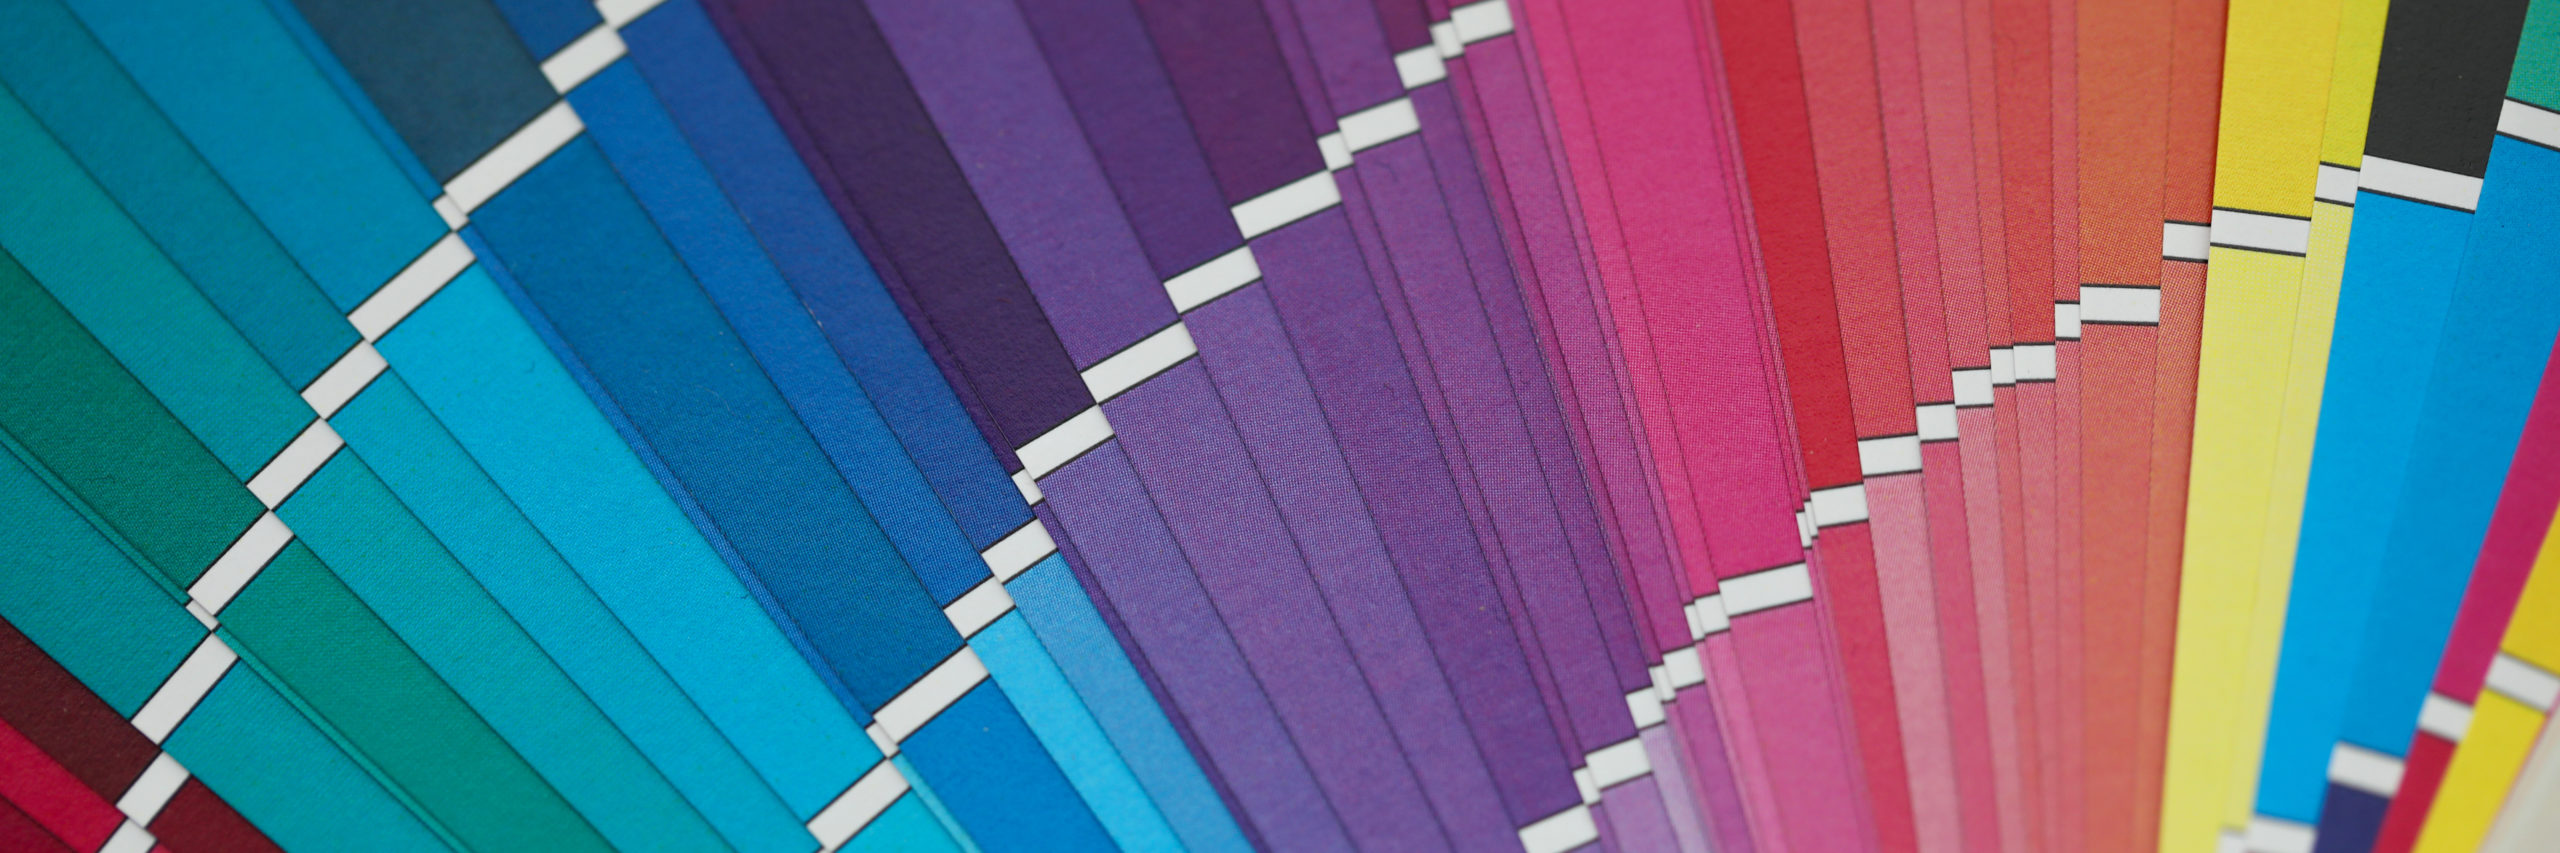 Stampa Paderno Dugnano Grafiche Tris - Tipografia Paderno Dugnano Grafiche Tris | psicologia del colore marketing | marketing colori